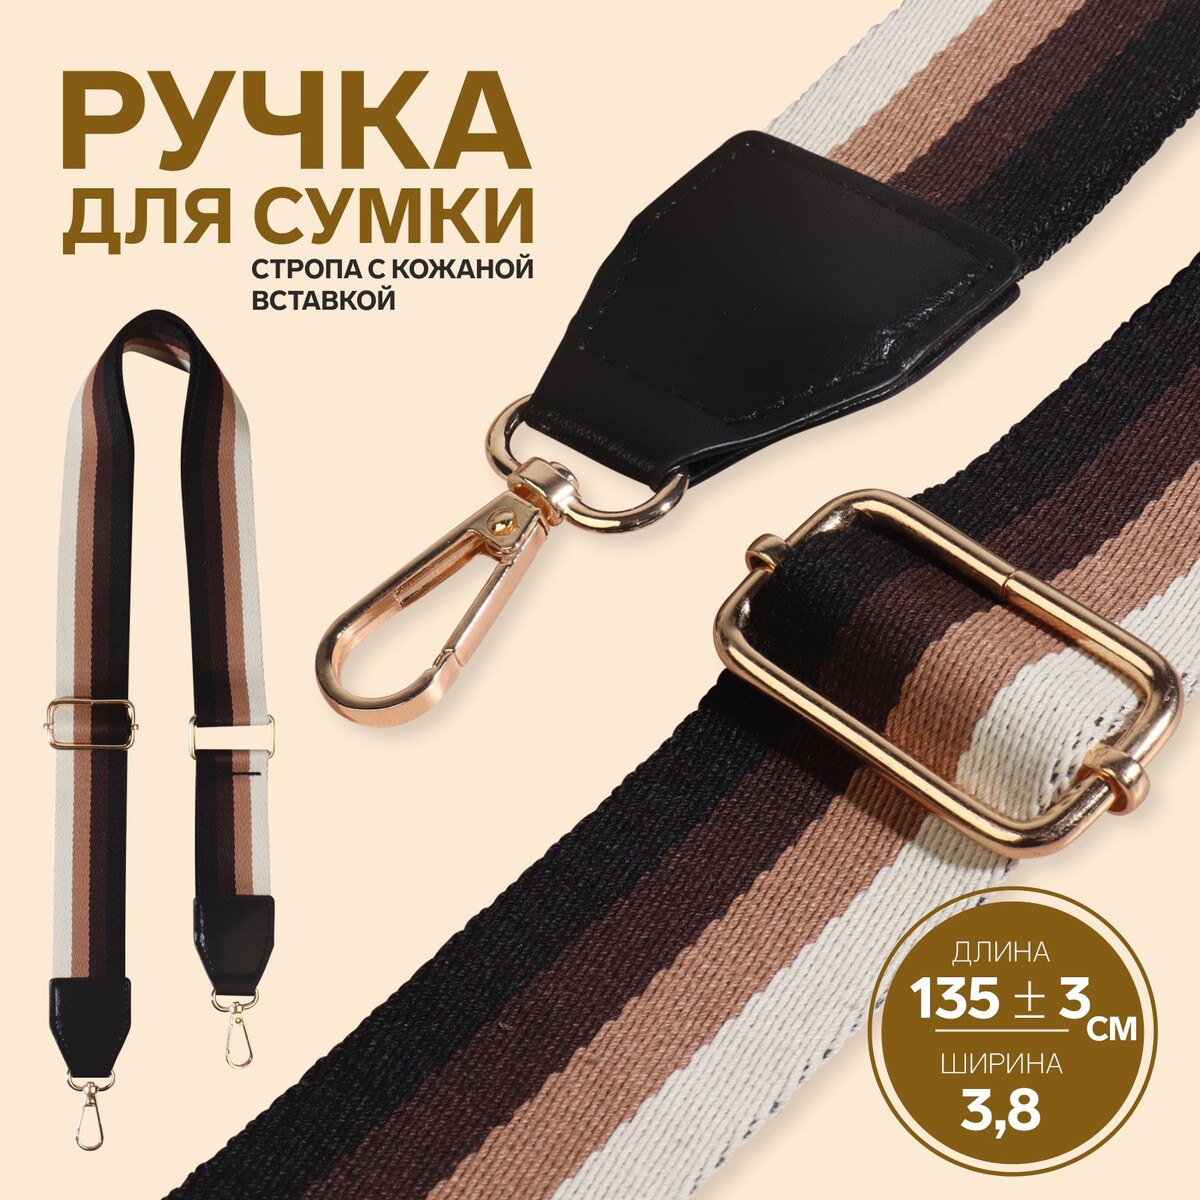 Ручка для сумки, стропа с кожаной вставкой, 139 ± 3 × 3,8 см, цвет черный/коричневый/песочный/золотой ручки для сумки деревянные с полукольцами 10 3 × 8 см 2 шт бежевый золотой